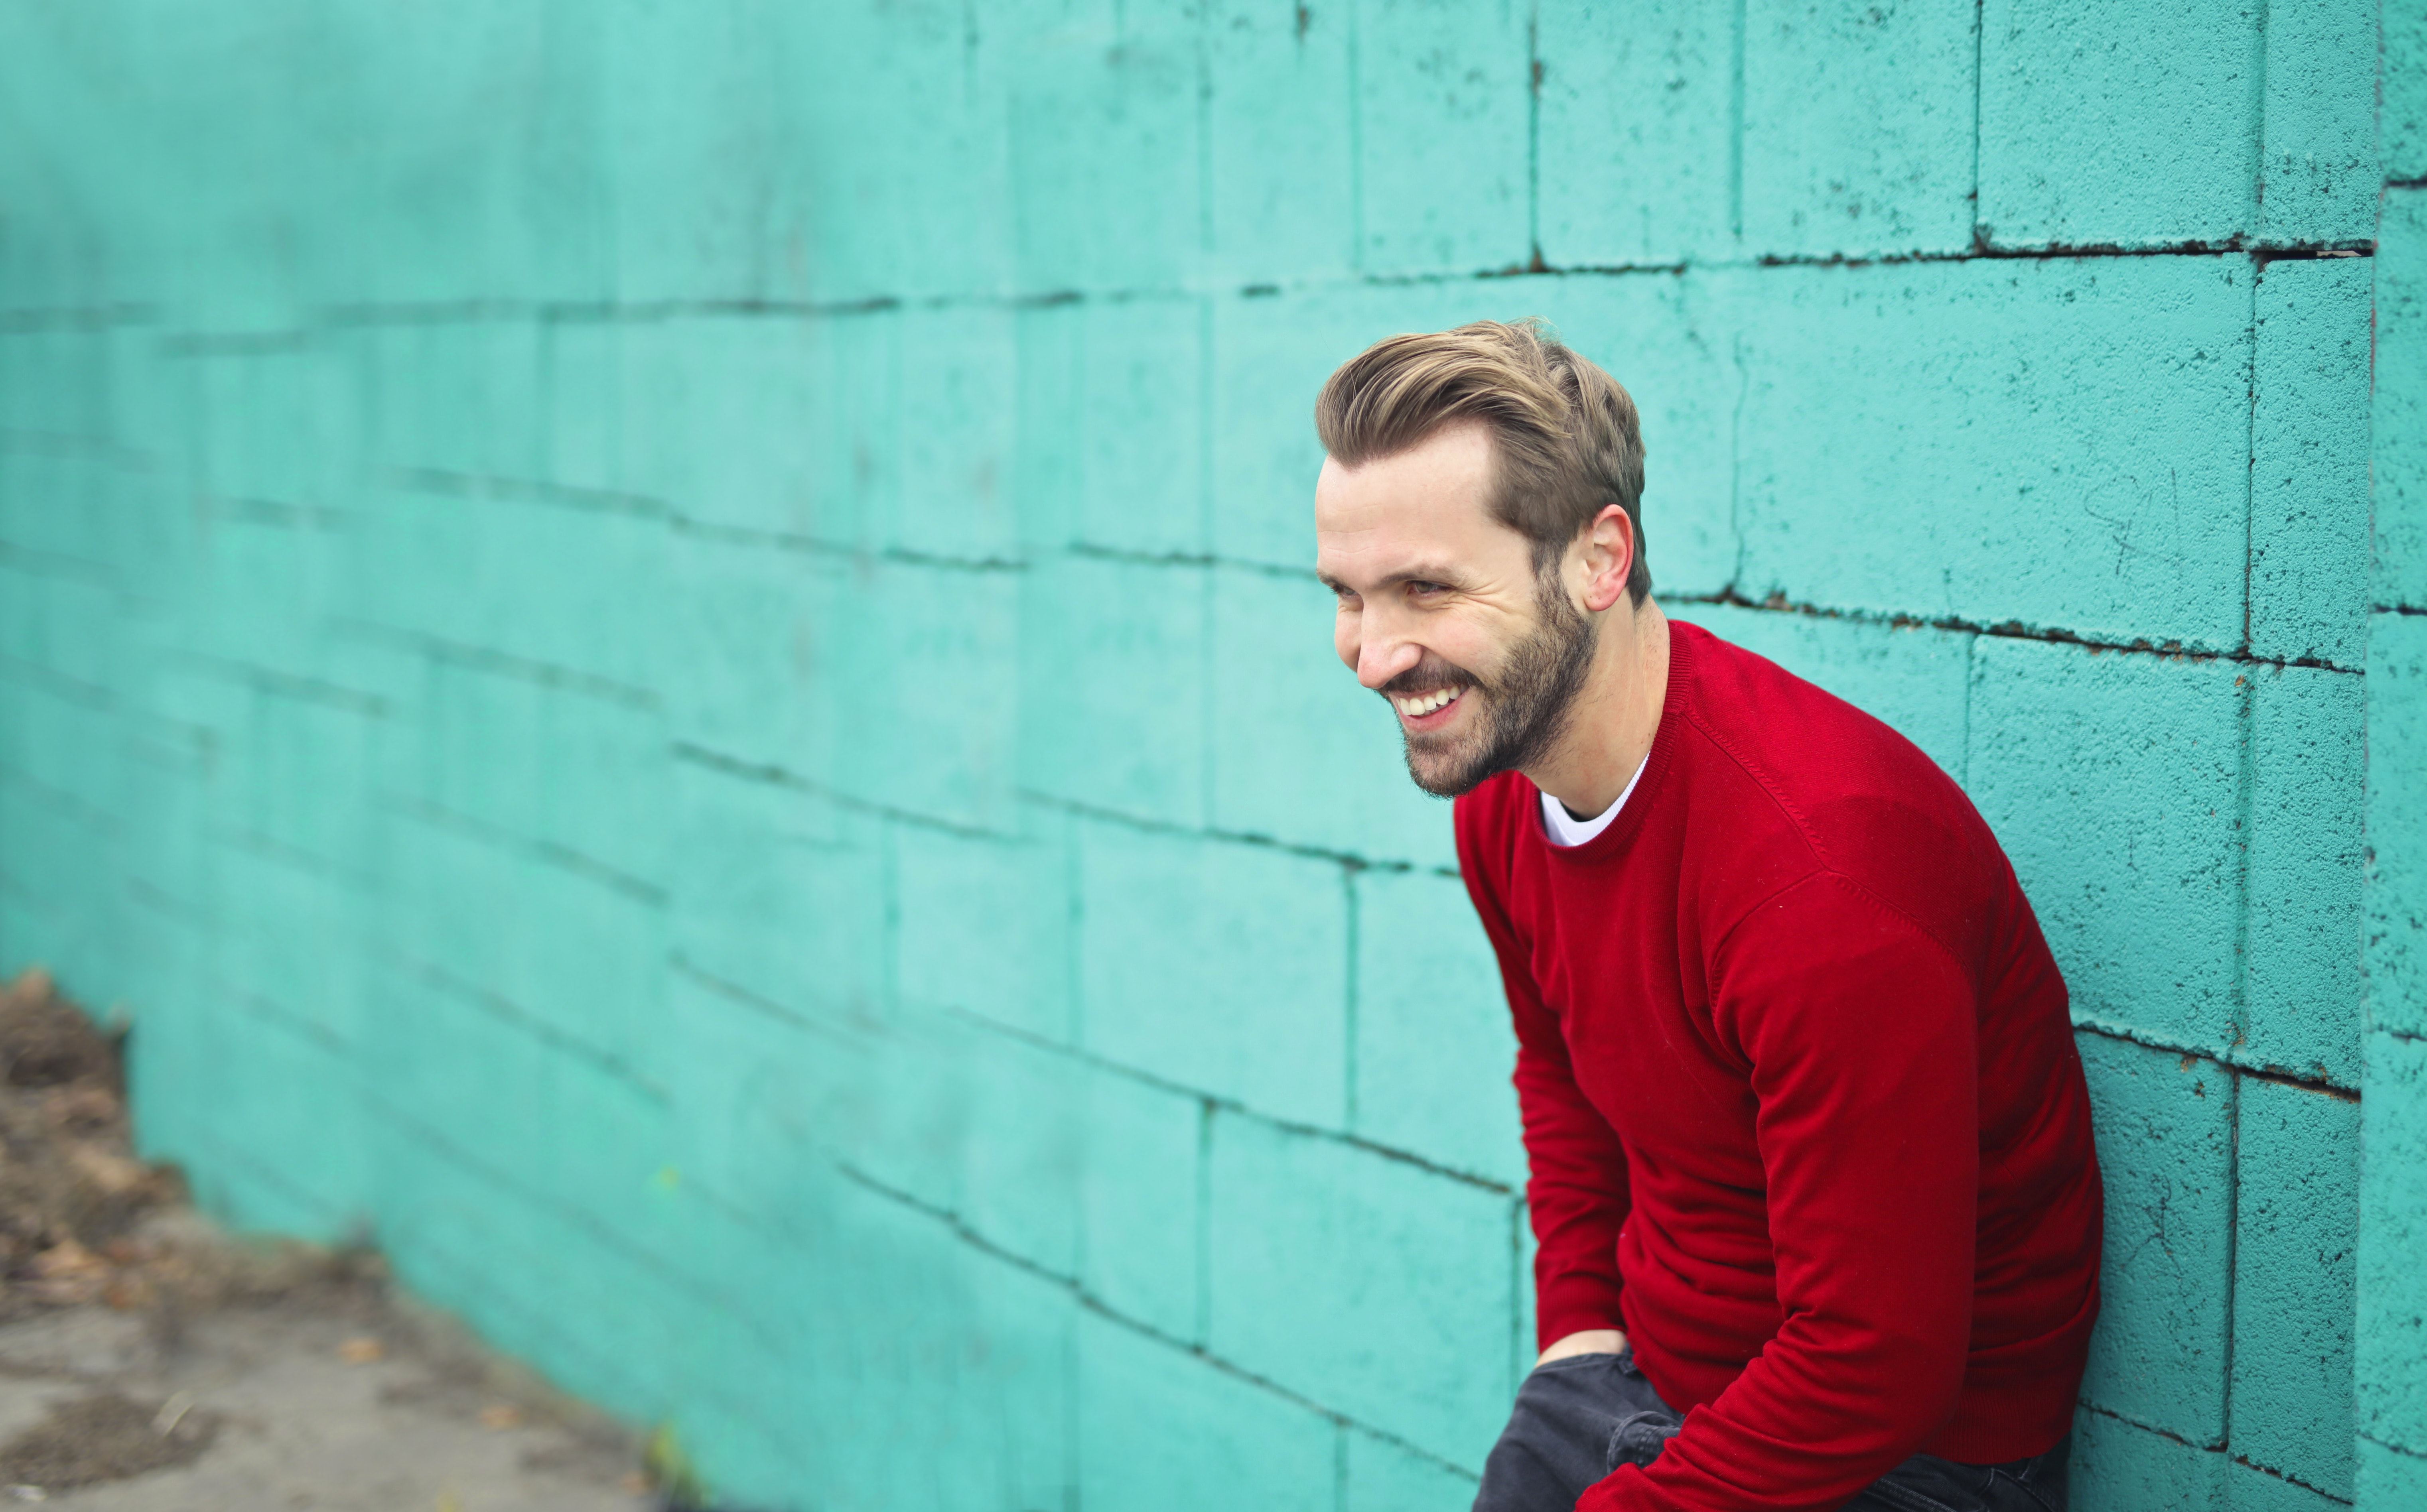 Een man met een rode trui staat tegen een turquoise muur en lacht.